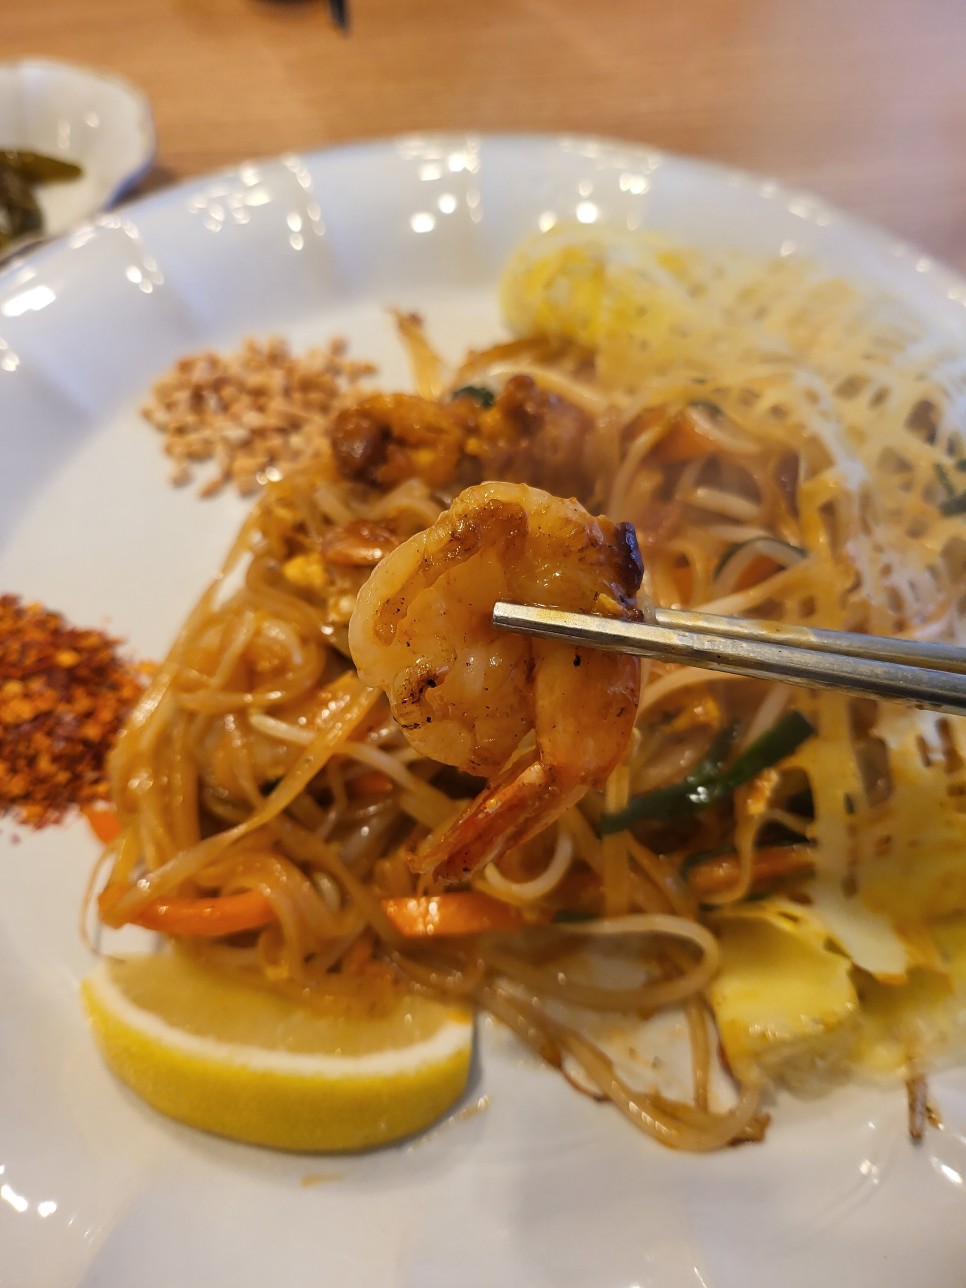 송파 석촌호수 맛집 술먹은 다음날 해장하기 딱 좋은 쌀국수 방콕언니